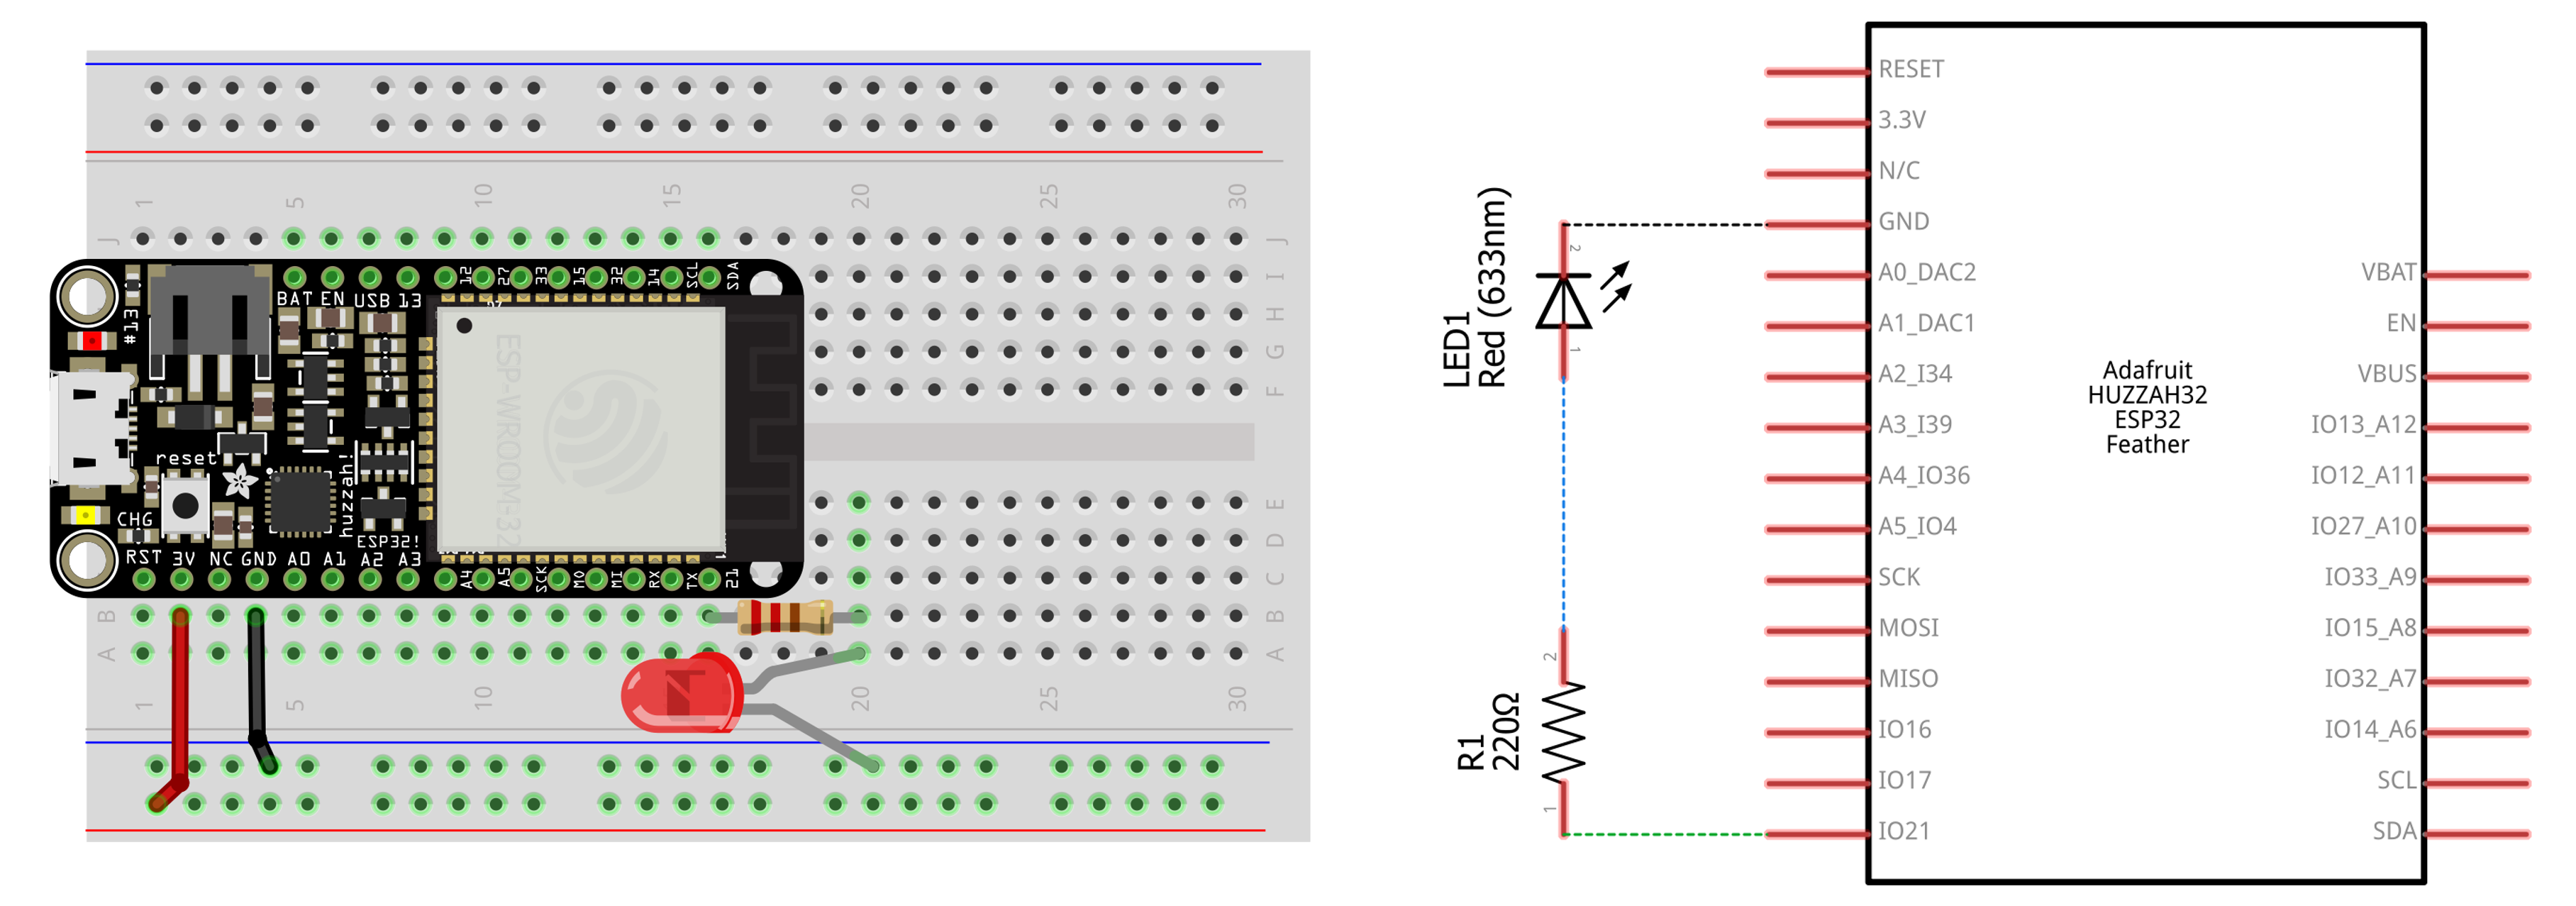 strategi Mursten interval L2: Blinking an LED - Physical Computing